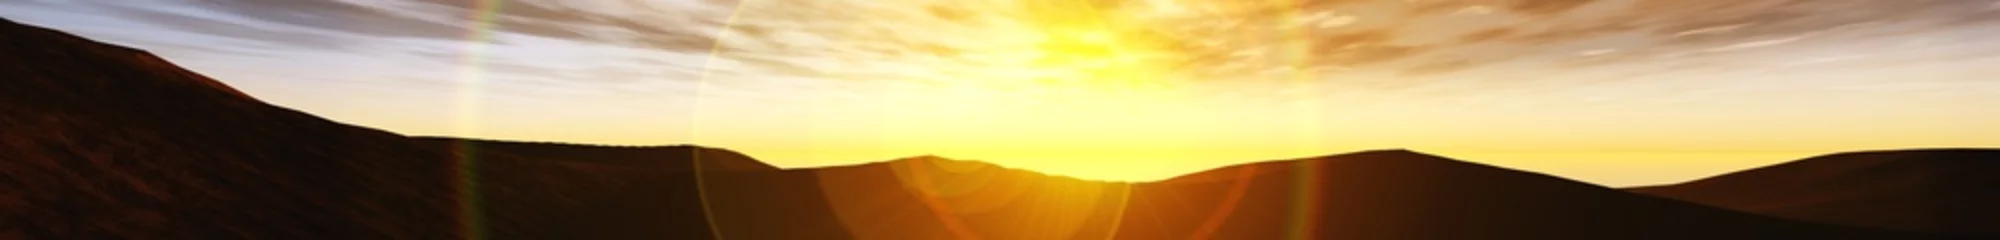 Draagtas panoramisch landschap van zonsondergang over de heuvels, banner, licht boven de heuvels, bergzonsondergang, het silhouet van de heuvels © ustas